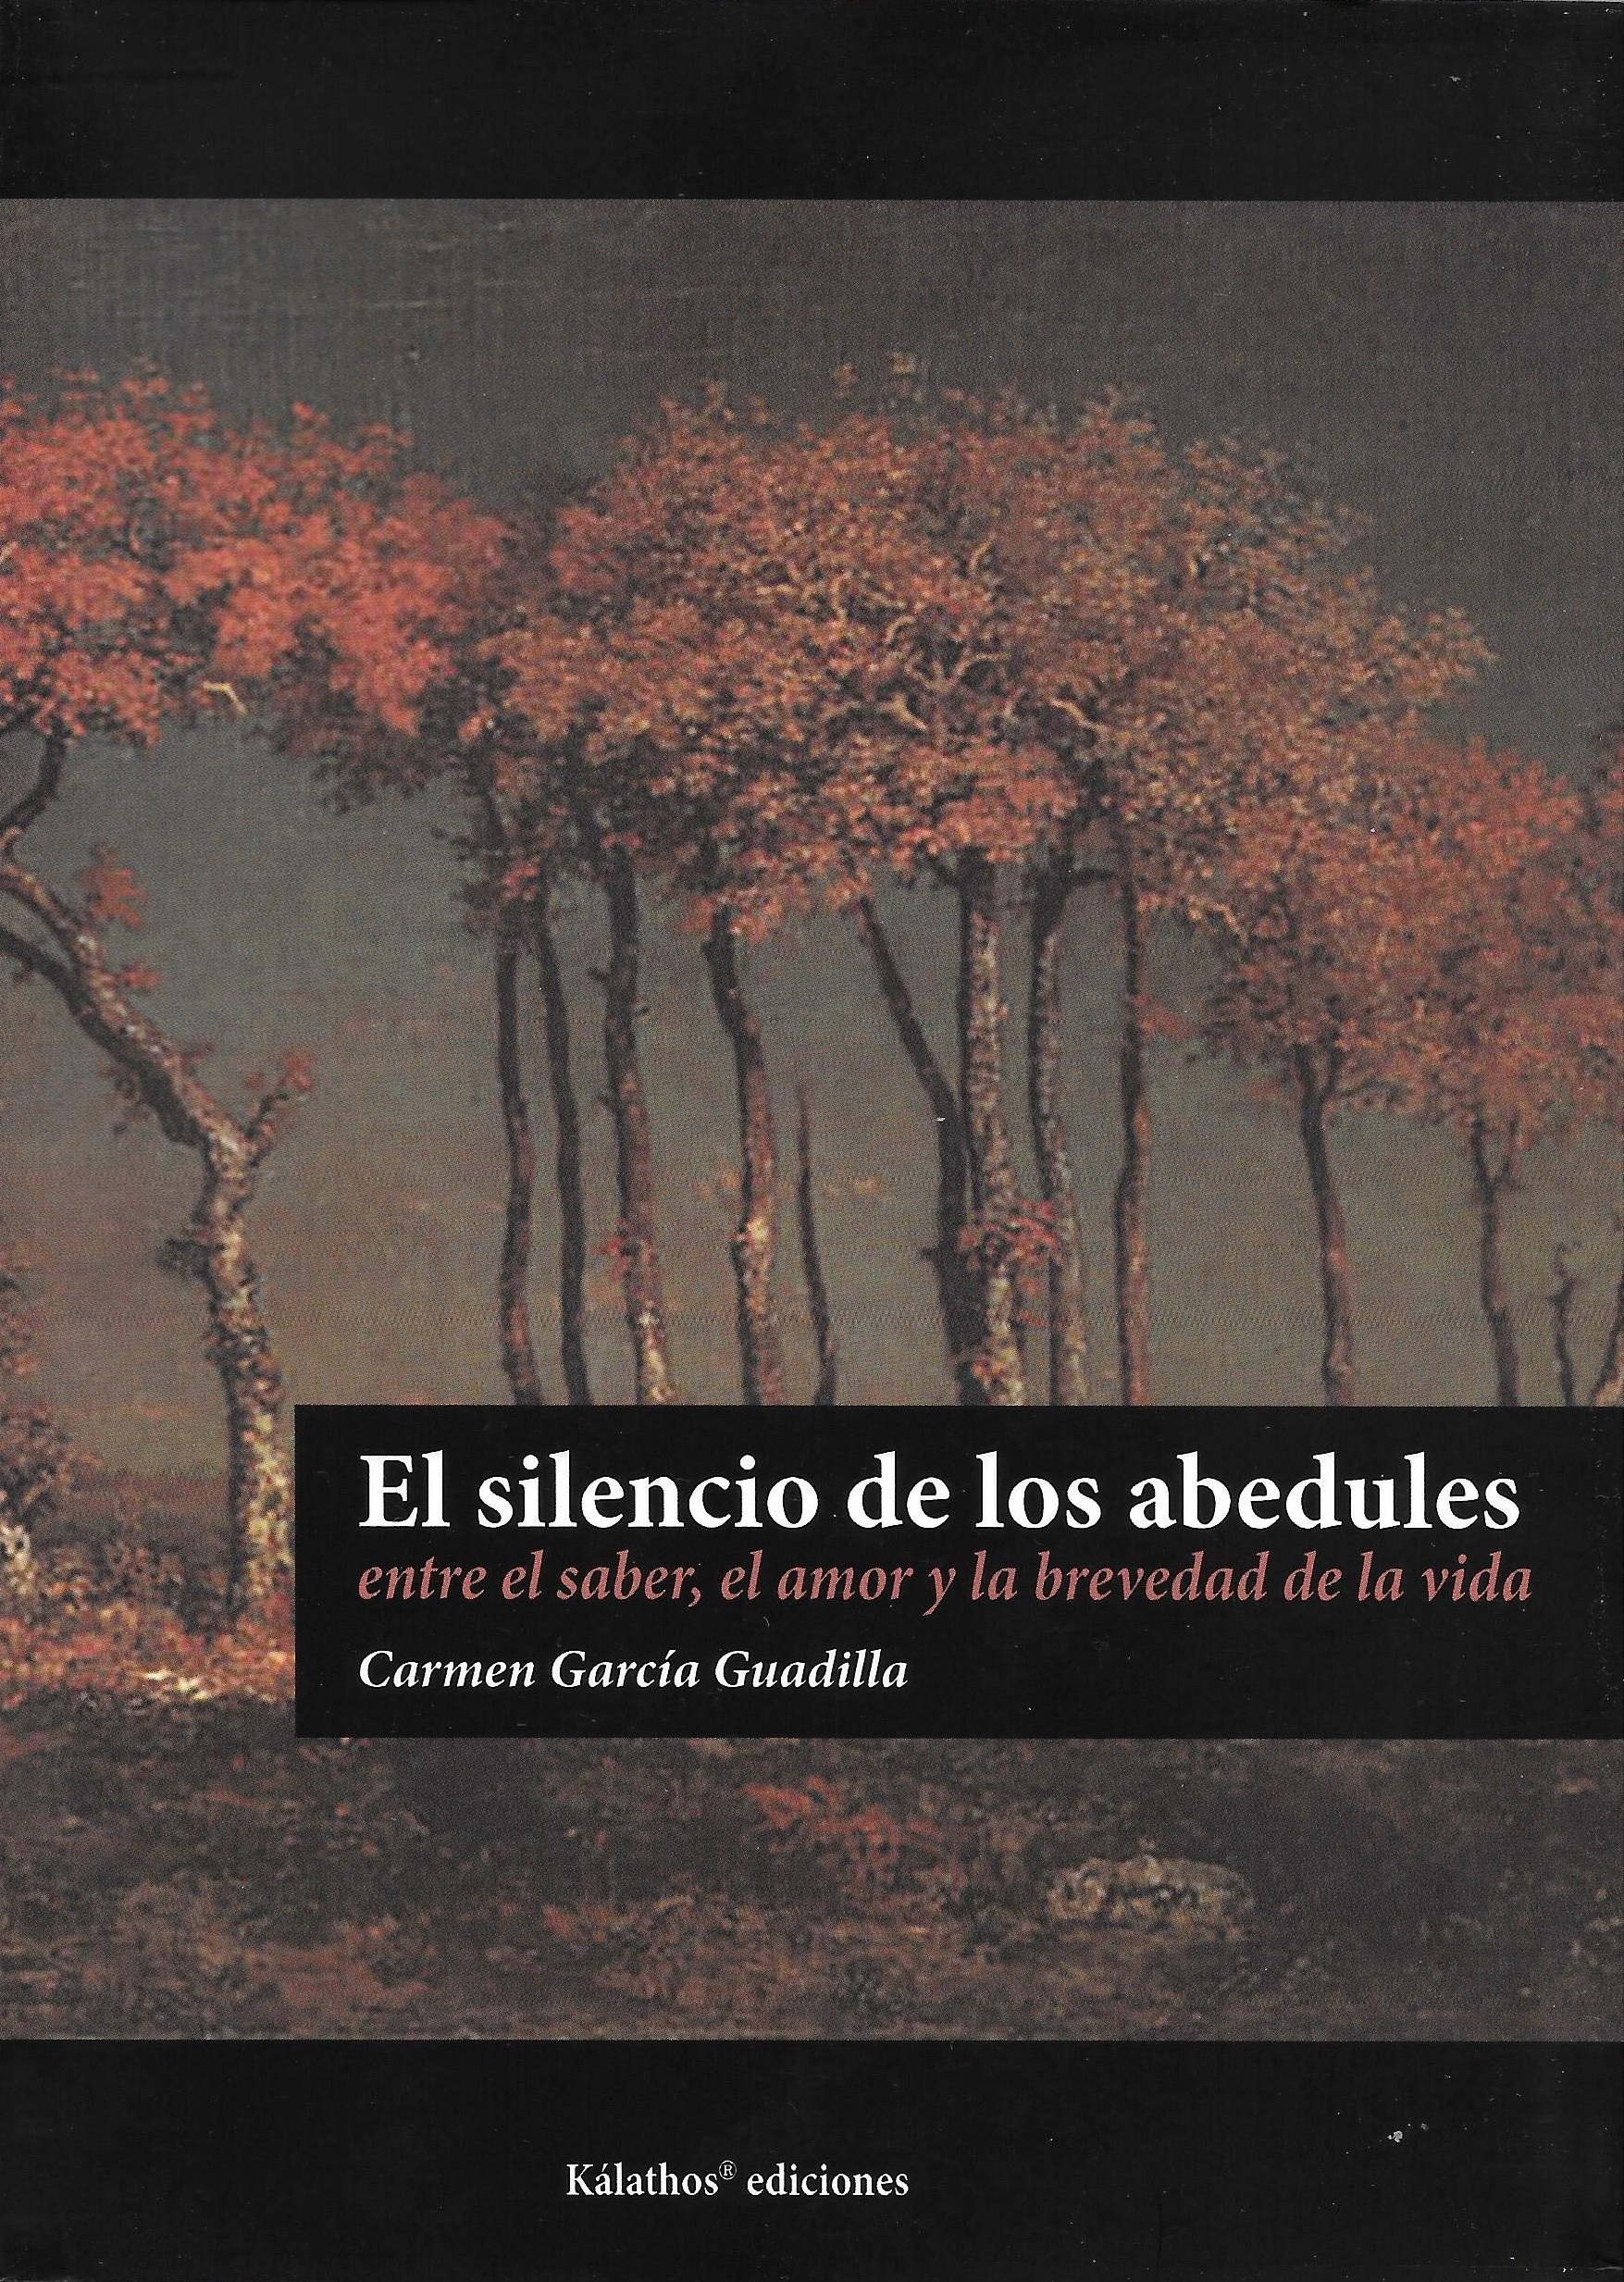 El silencio de los abedules, de Carmen García Guadilla